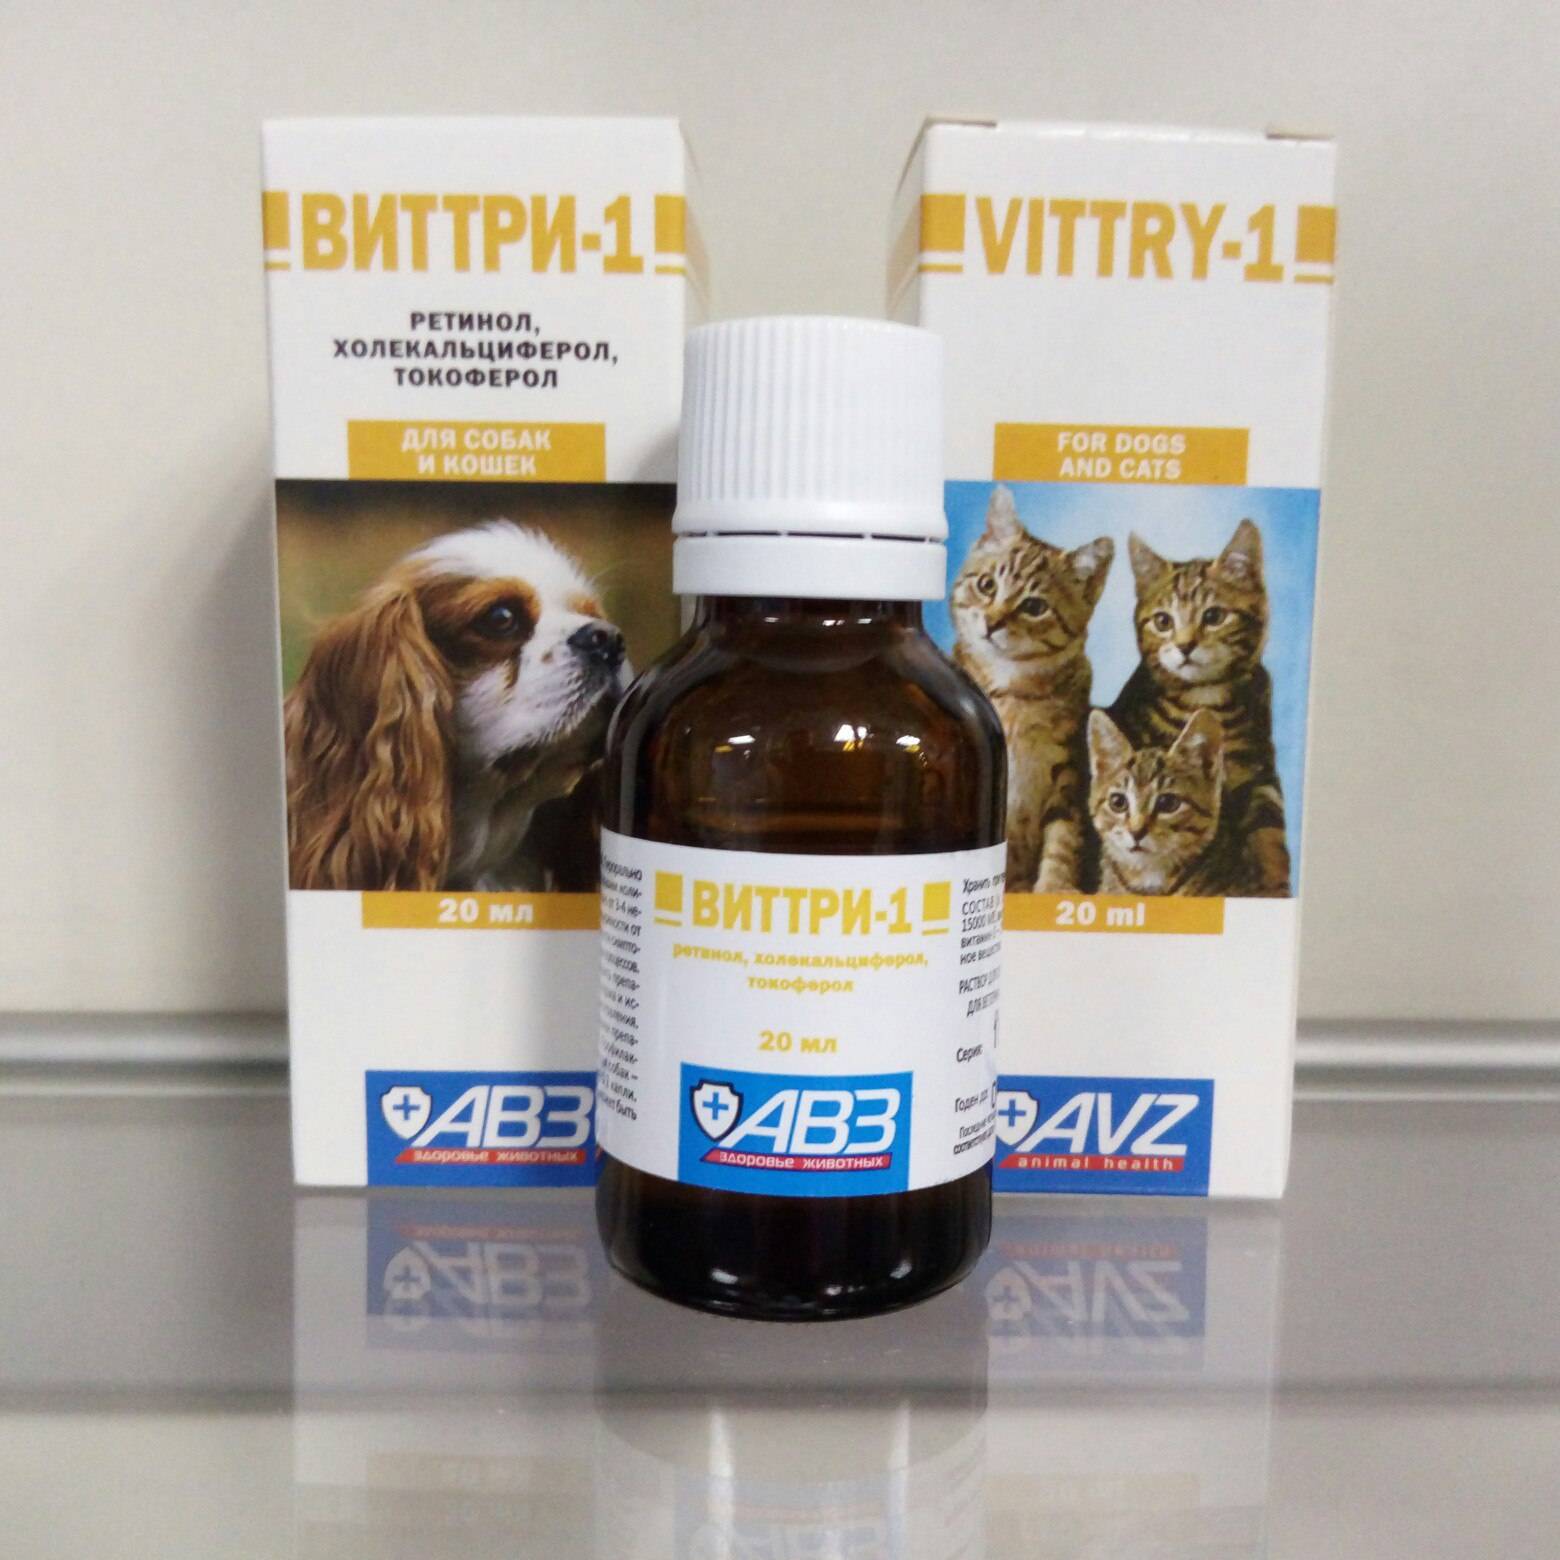 Виттри-1 для кошек: описание, инструкция по применению